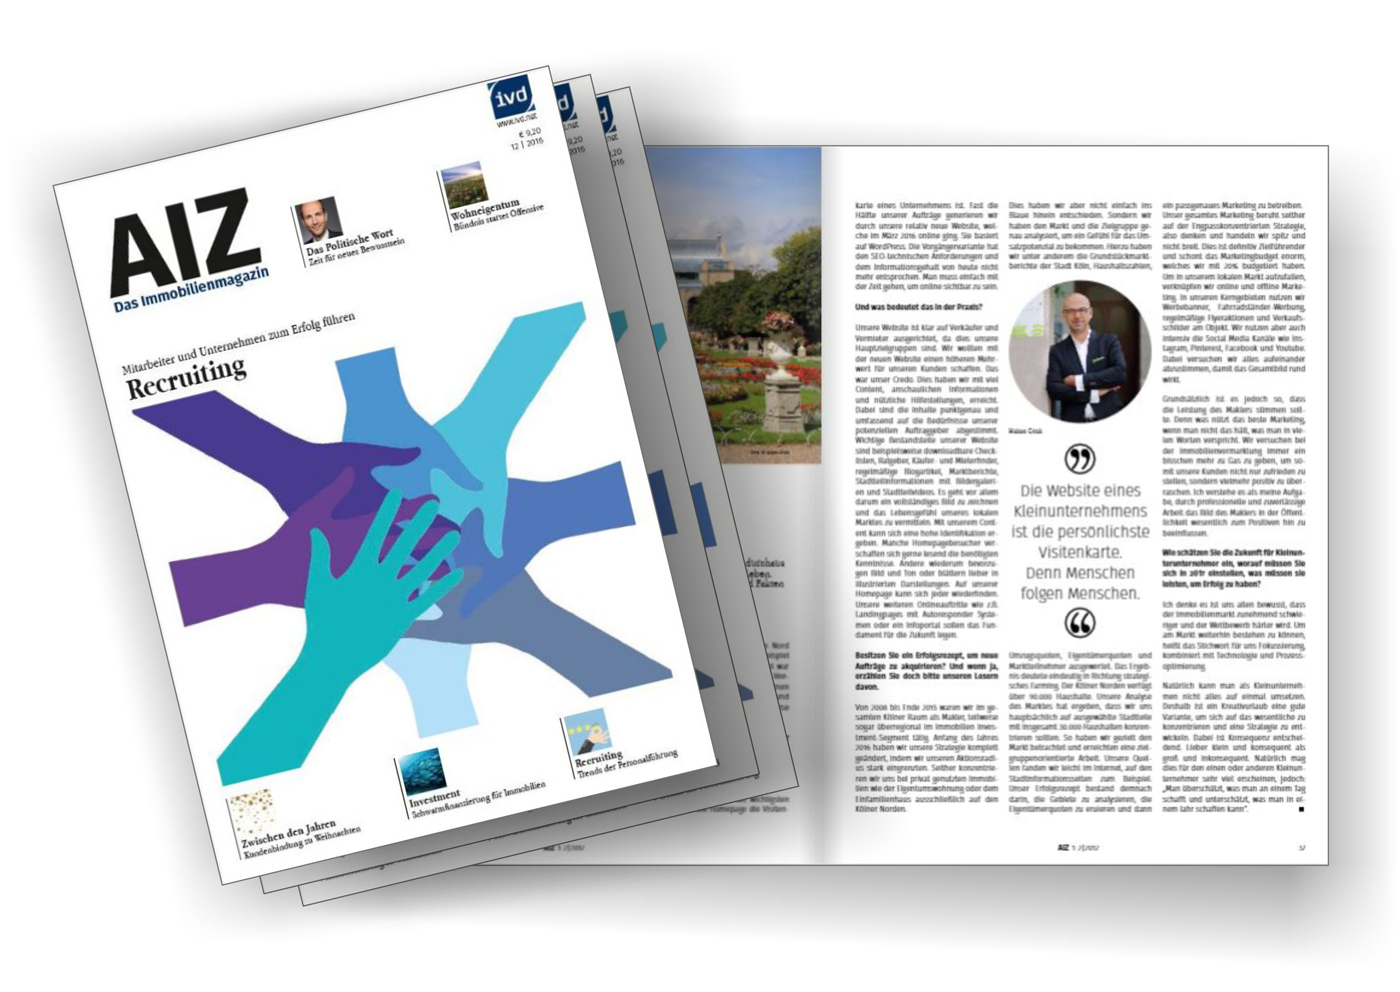 Hakan Citak im Interview mit der AIZ - Das Immobilienmagazin  Immobilienverband IVD.jpg